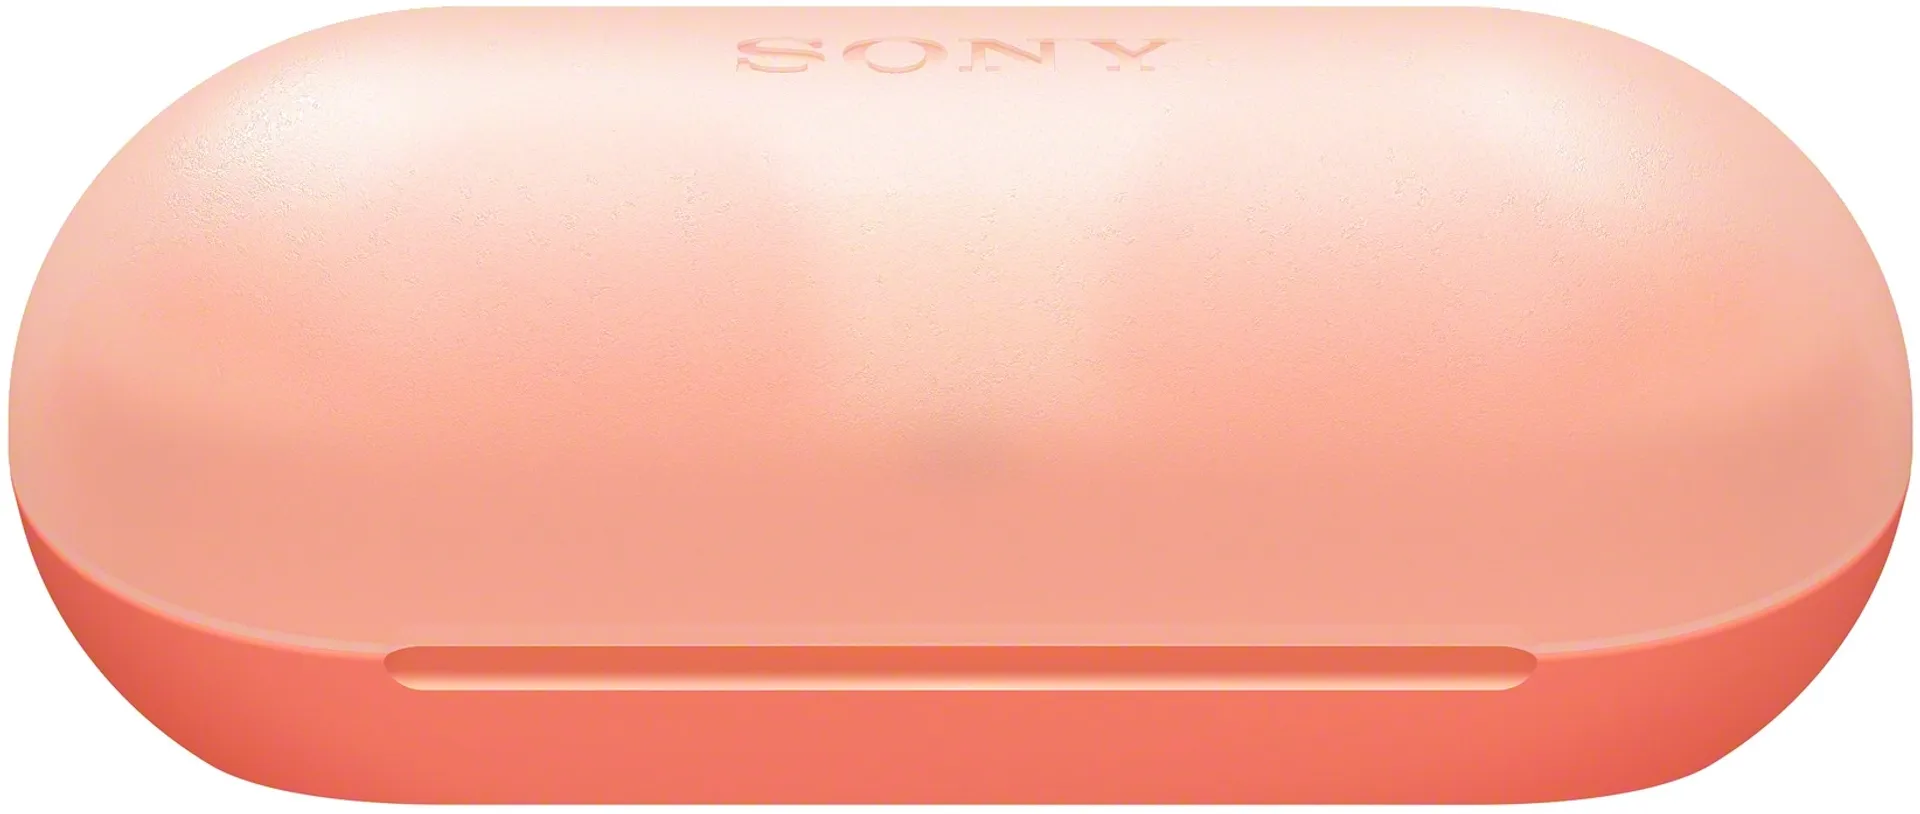 Sony langattomat bluetooth nappikuulokkeet WF-C500 oranssi - 3